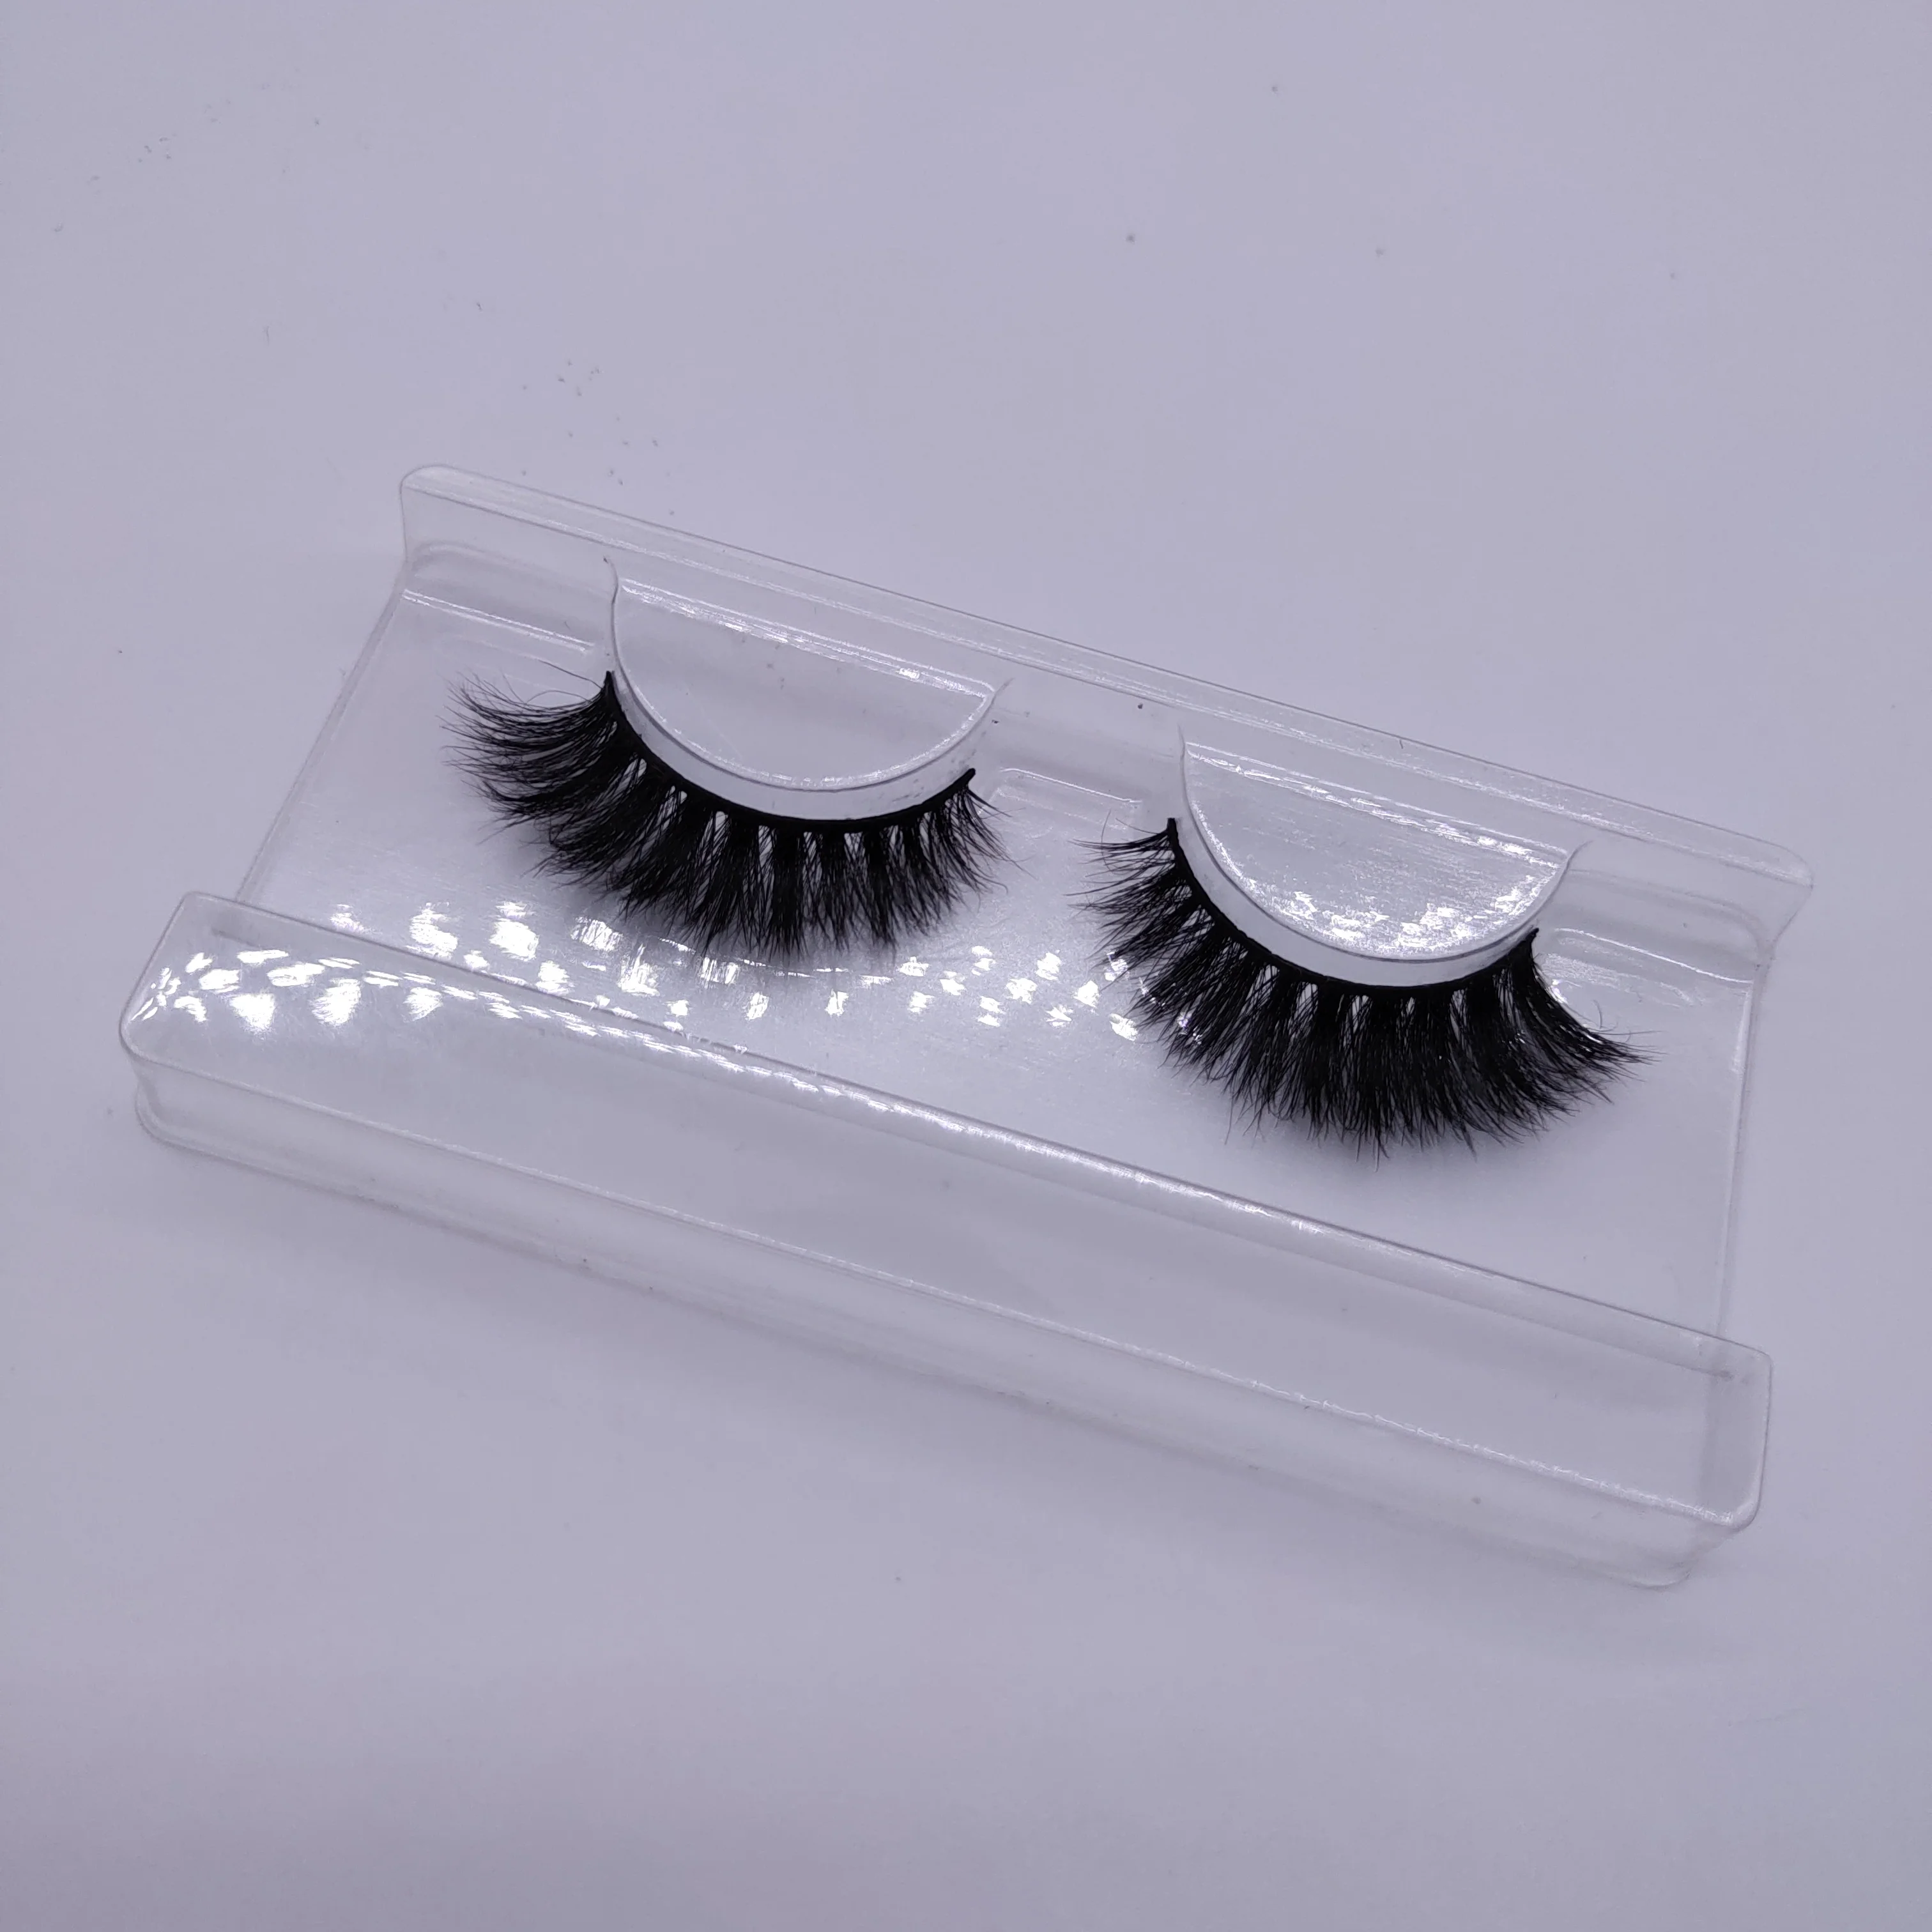 customised eyelash packaging house hair wispy lashes/ eyelashes